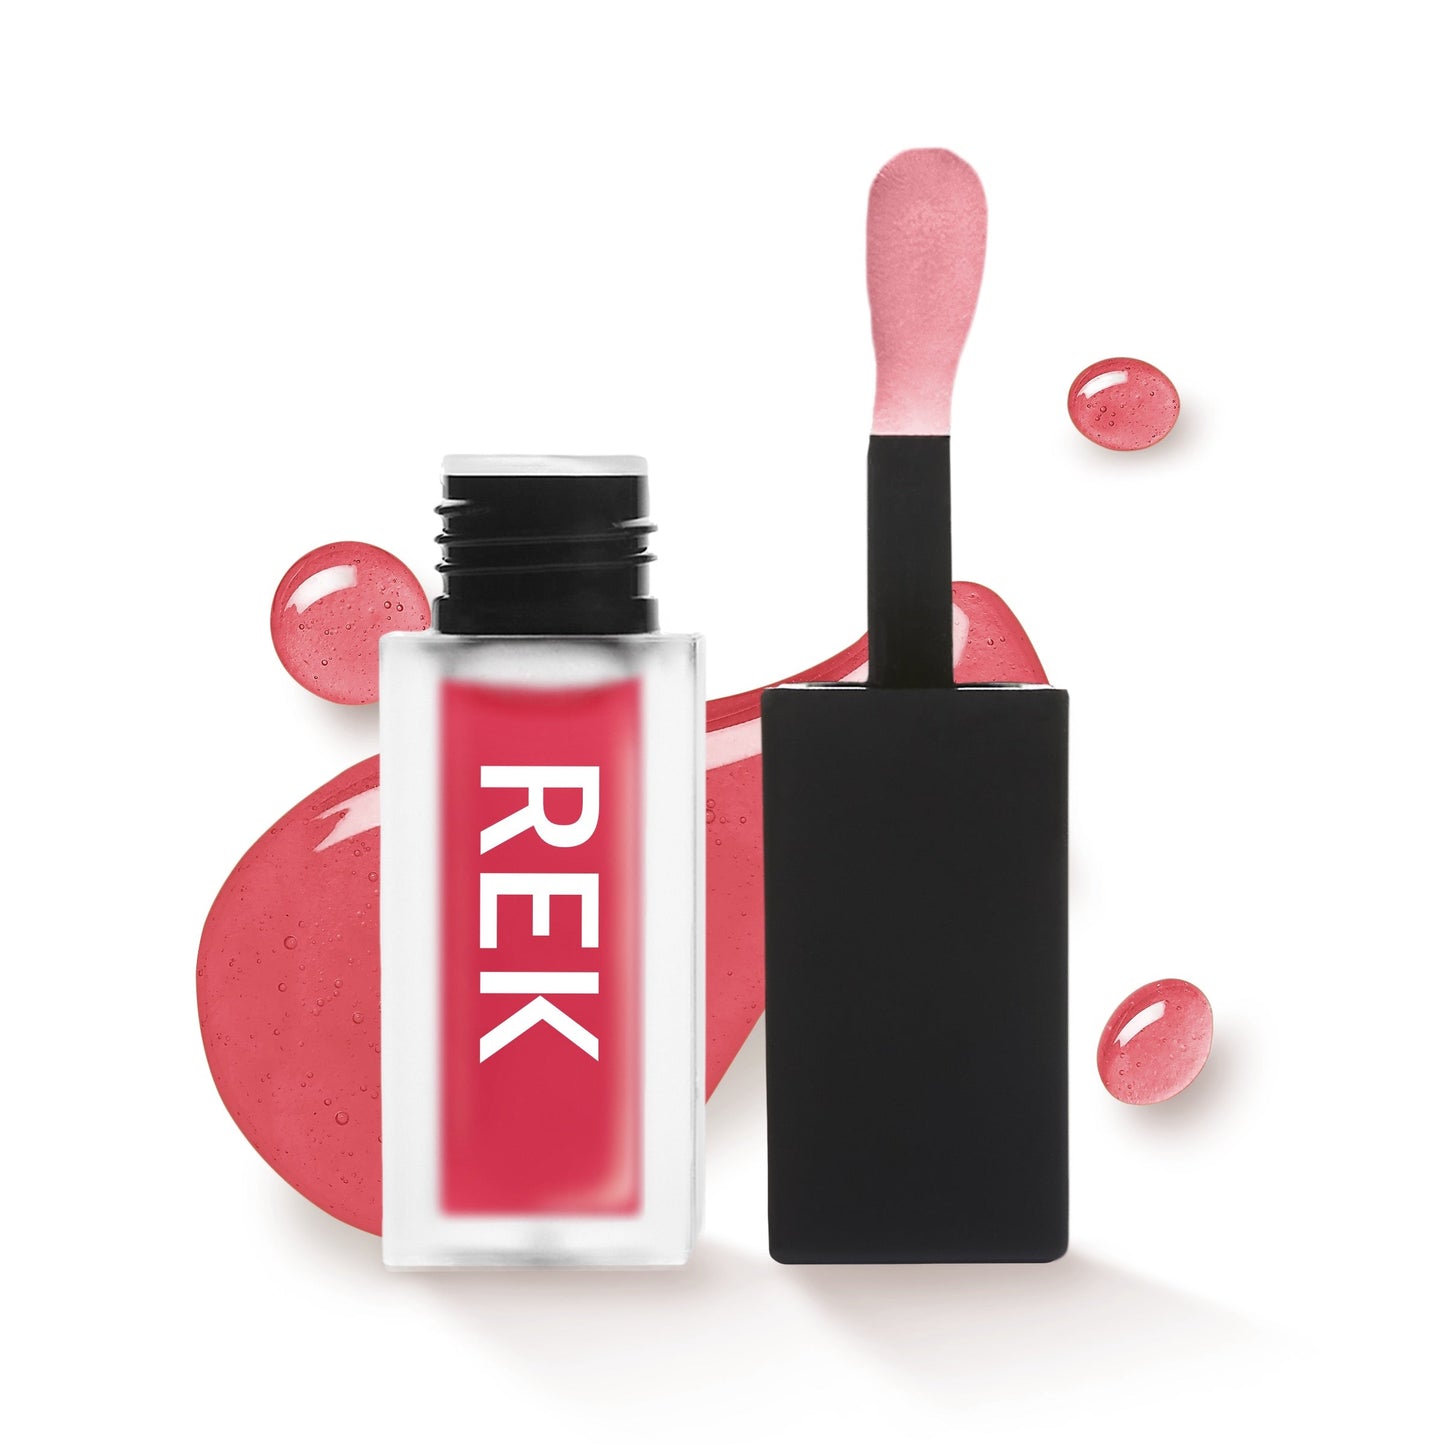 Lip Oils | REK Cosmetics - Premium Lip Oil from REK Cosmetics - Just $21! Shop now at REK Cosmetics